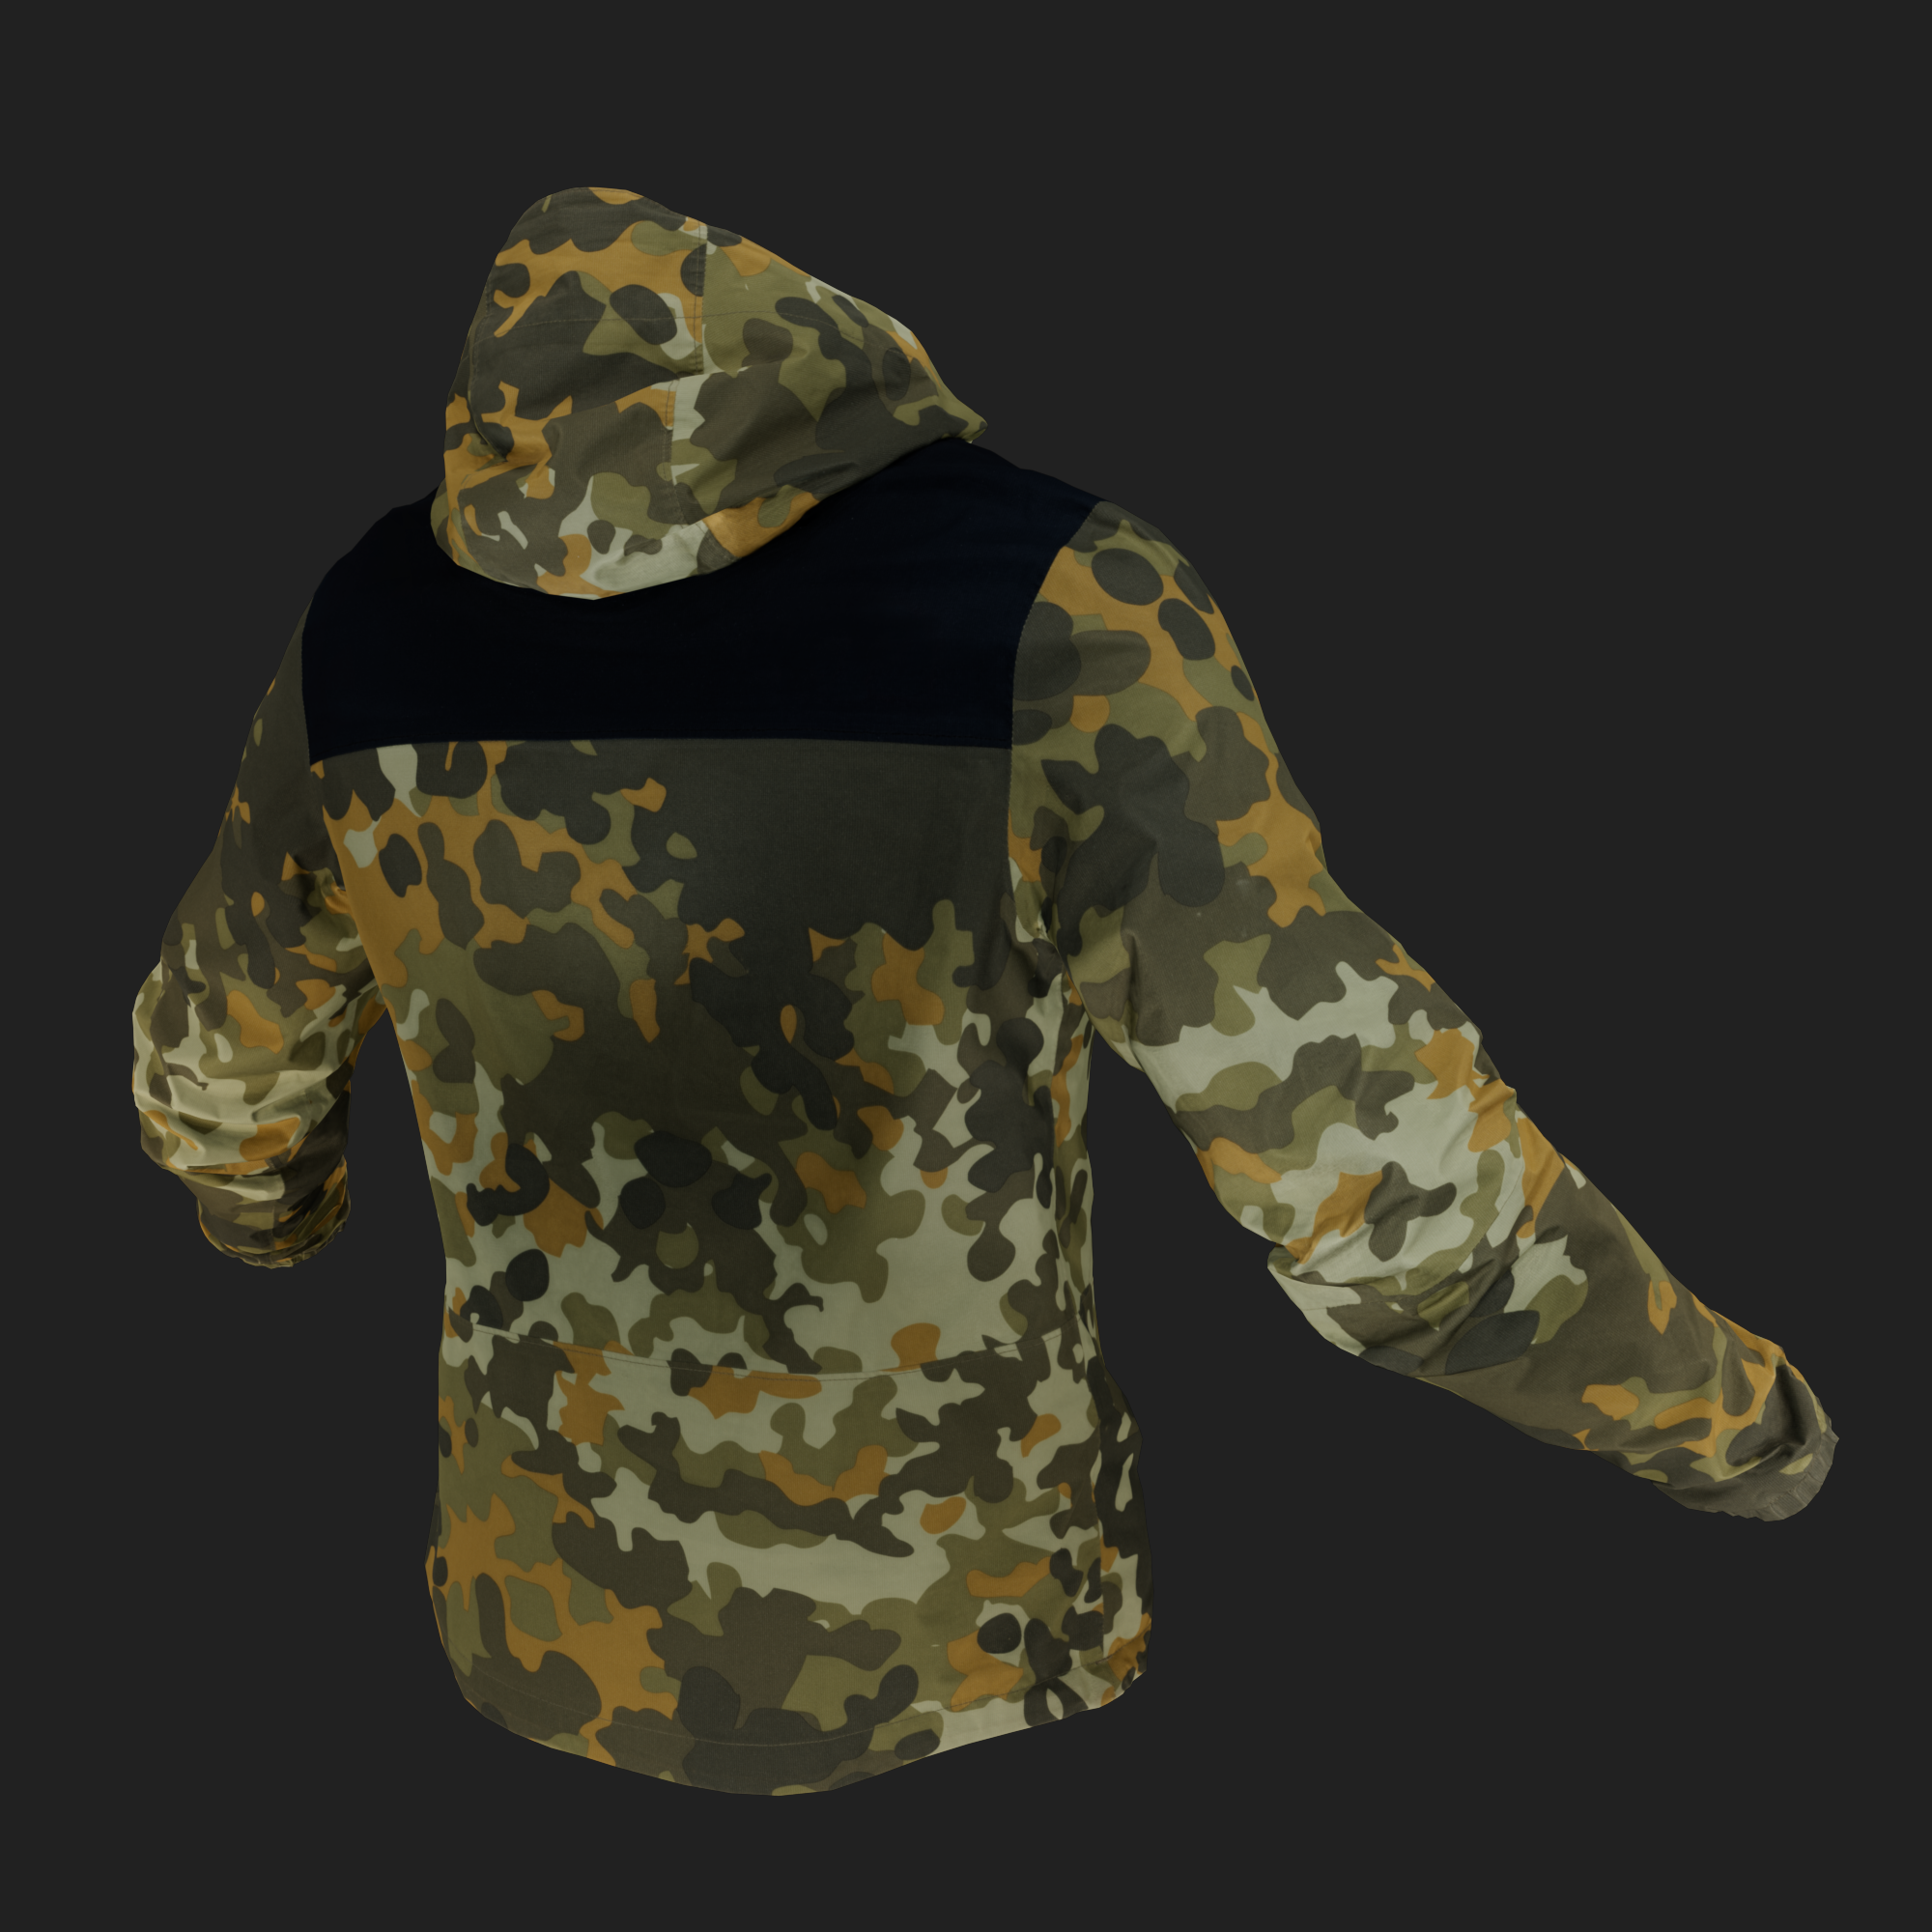 Camouflage Jacket with Hood